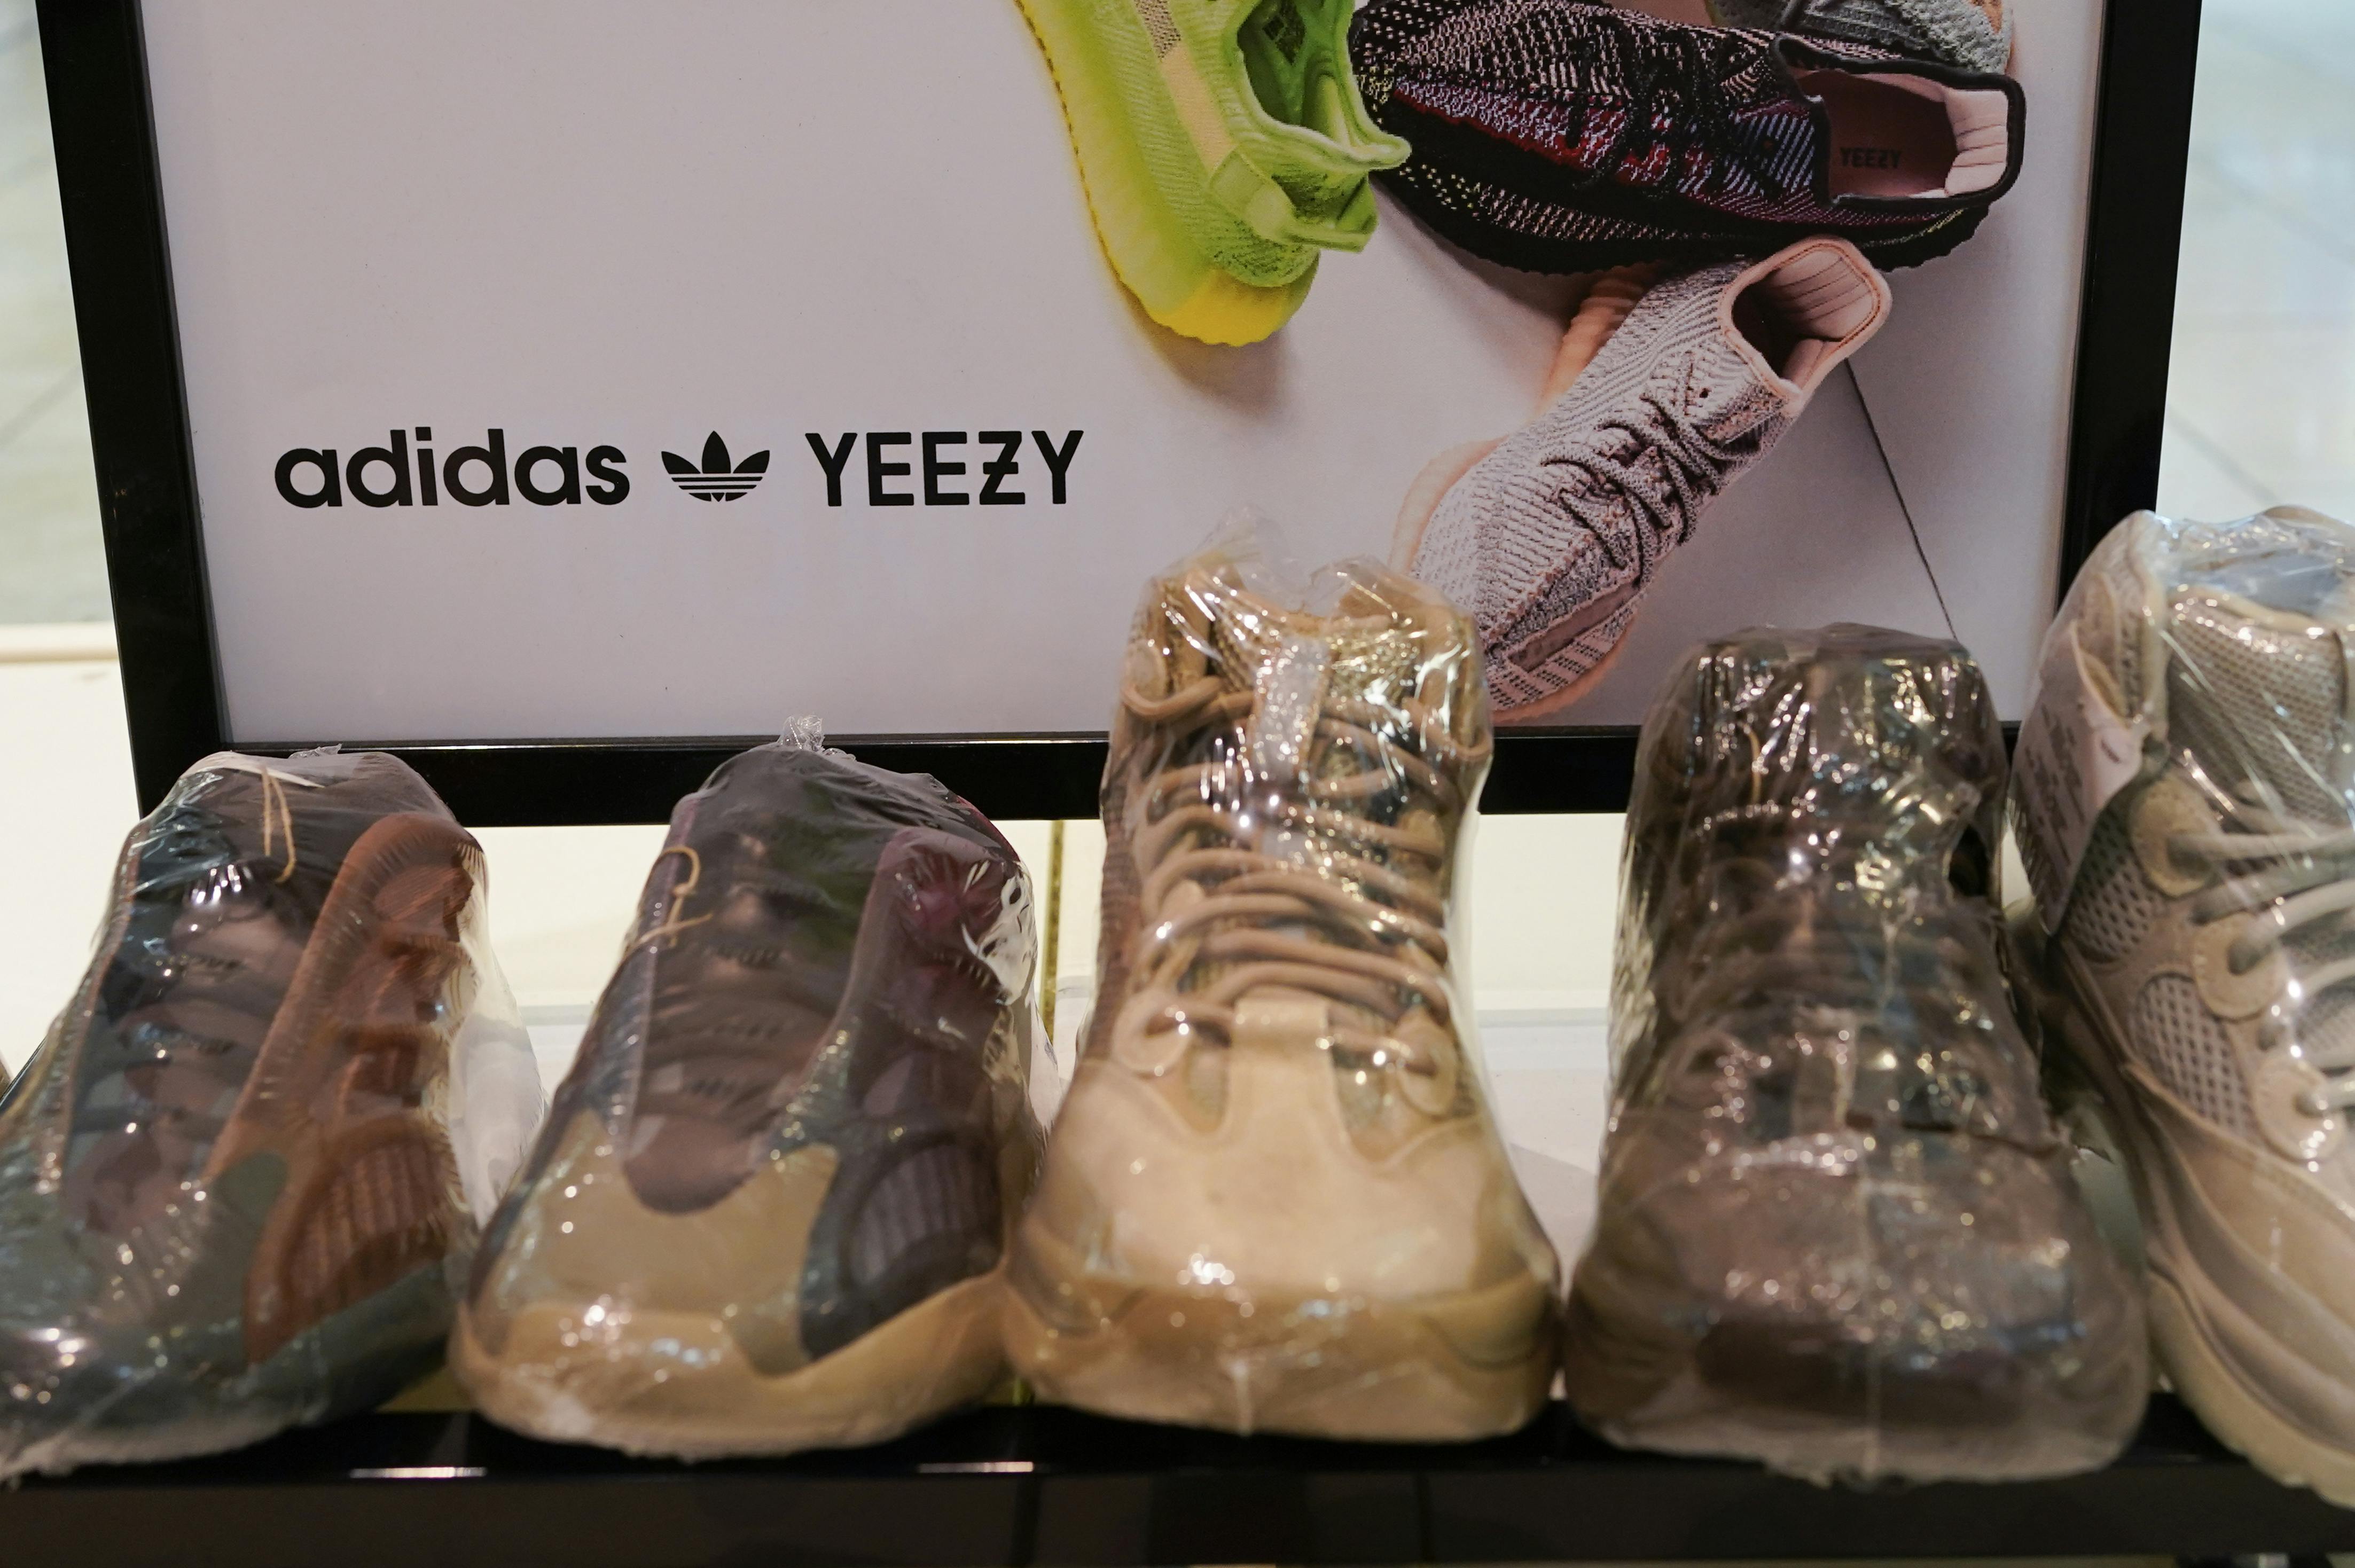 Det er slut med Yeezy-sko fra Adidas. For det tyske sportsbrand har efter hadske og antisemitiske ytringer fra den 45-årige rapstjerne droppet det mangeårige samarbejde
